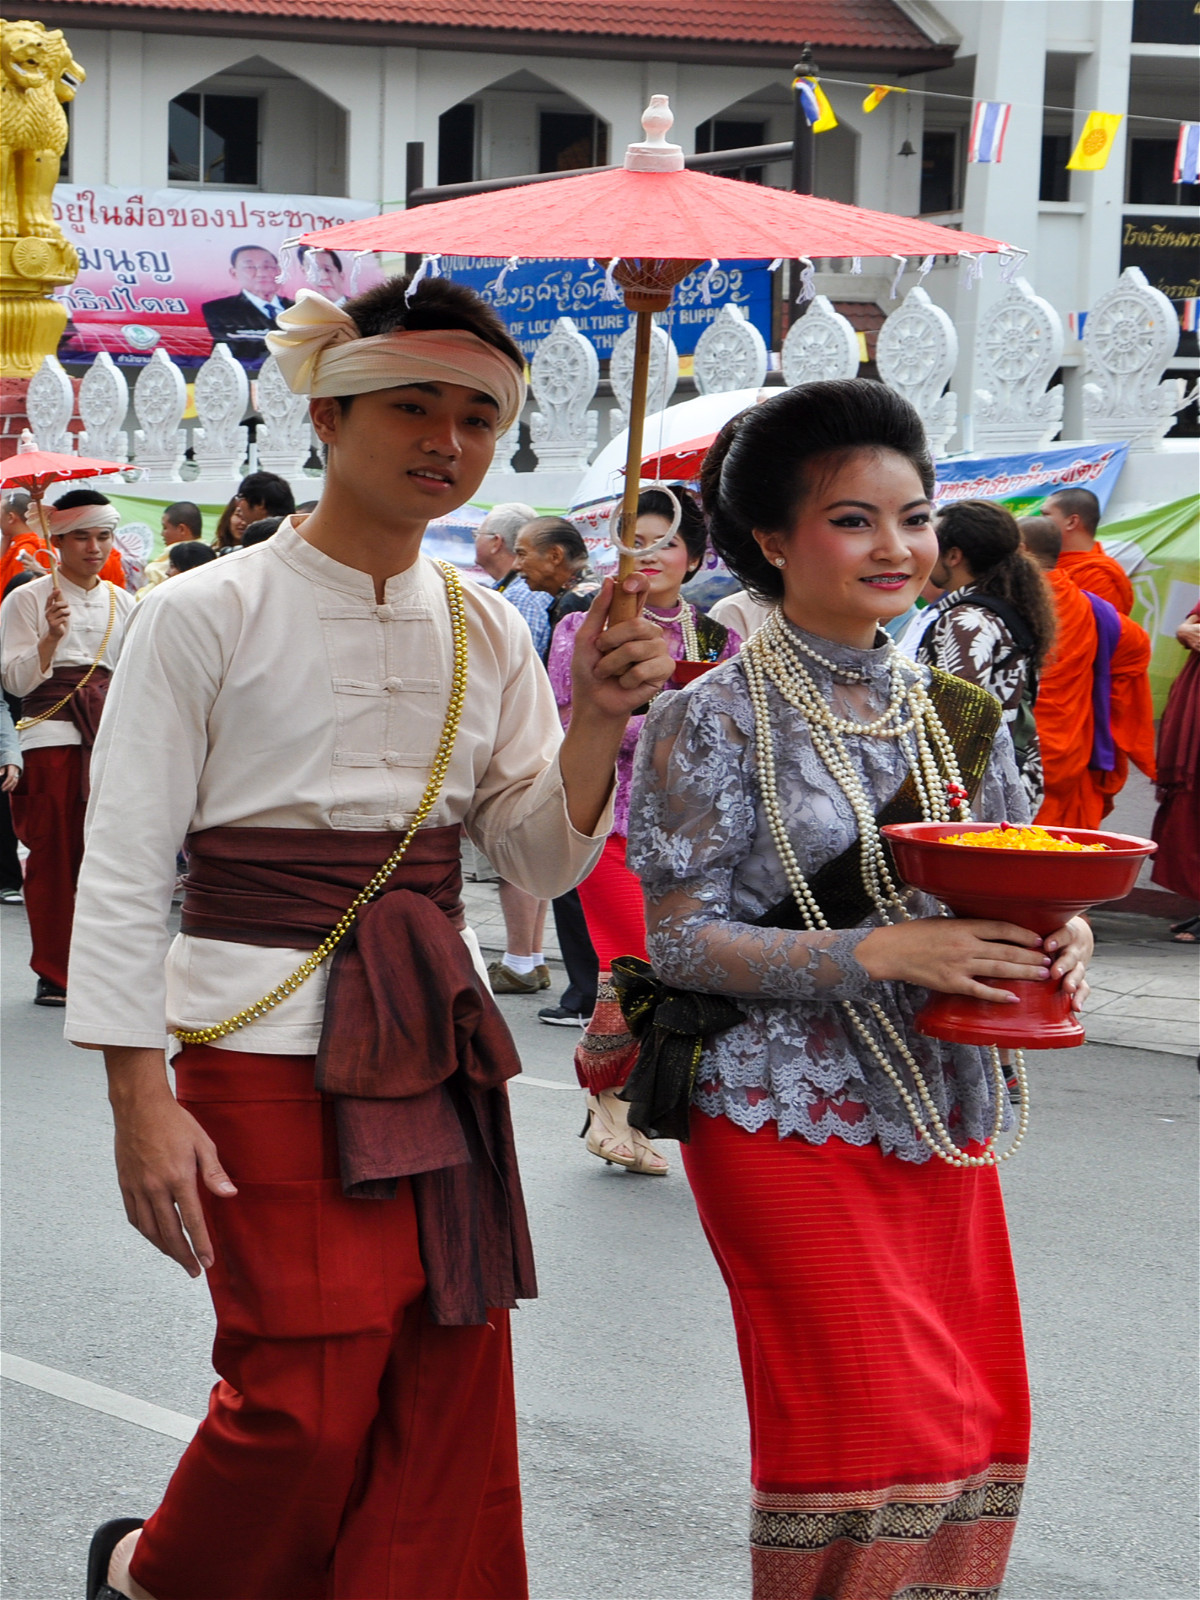 азиаты под зонтиком в традиционных одеждах